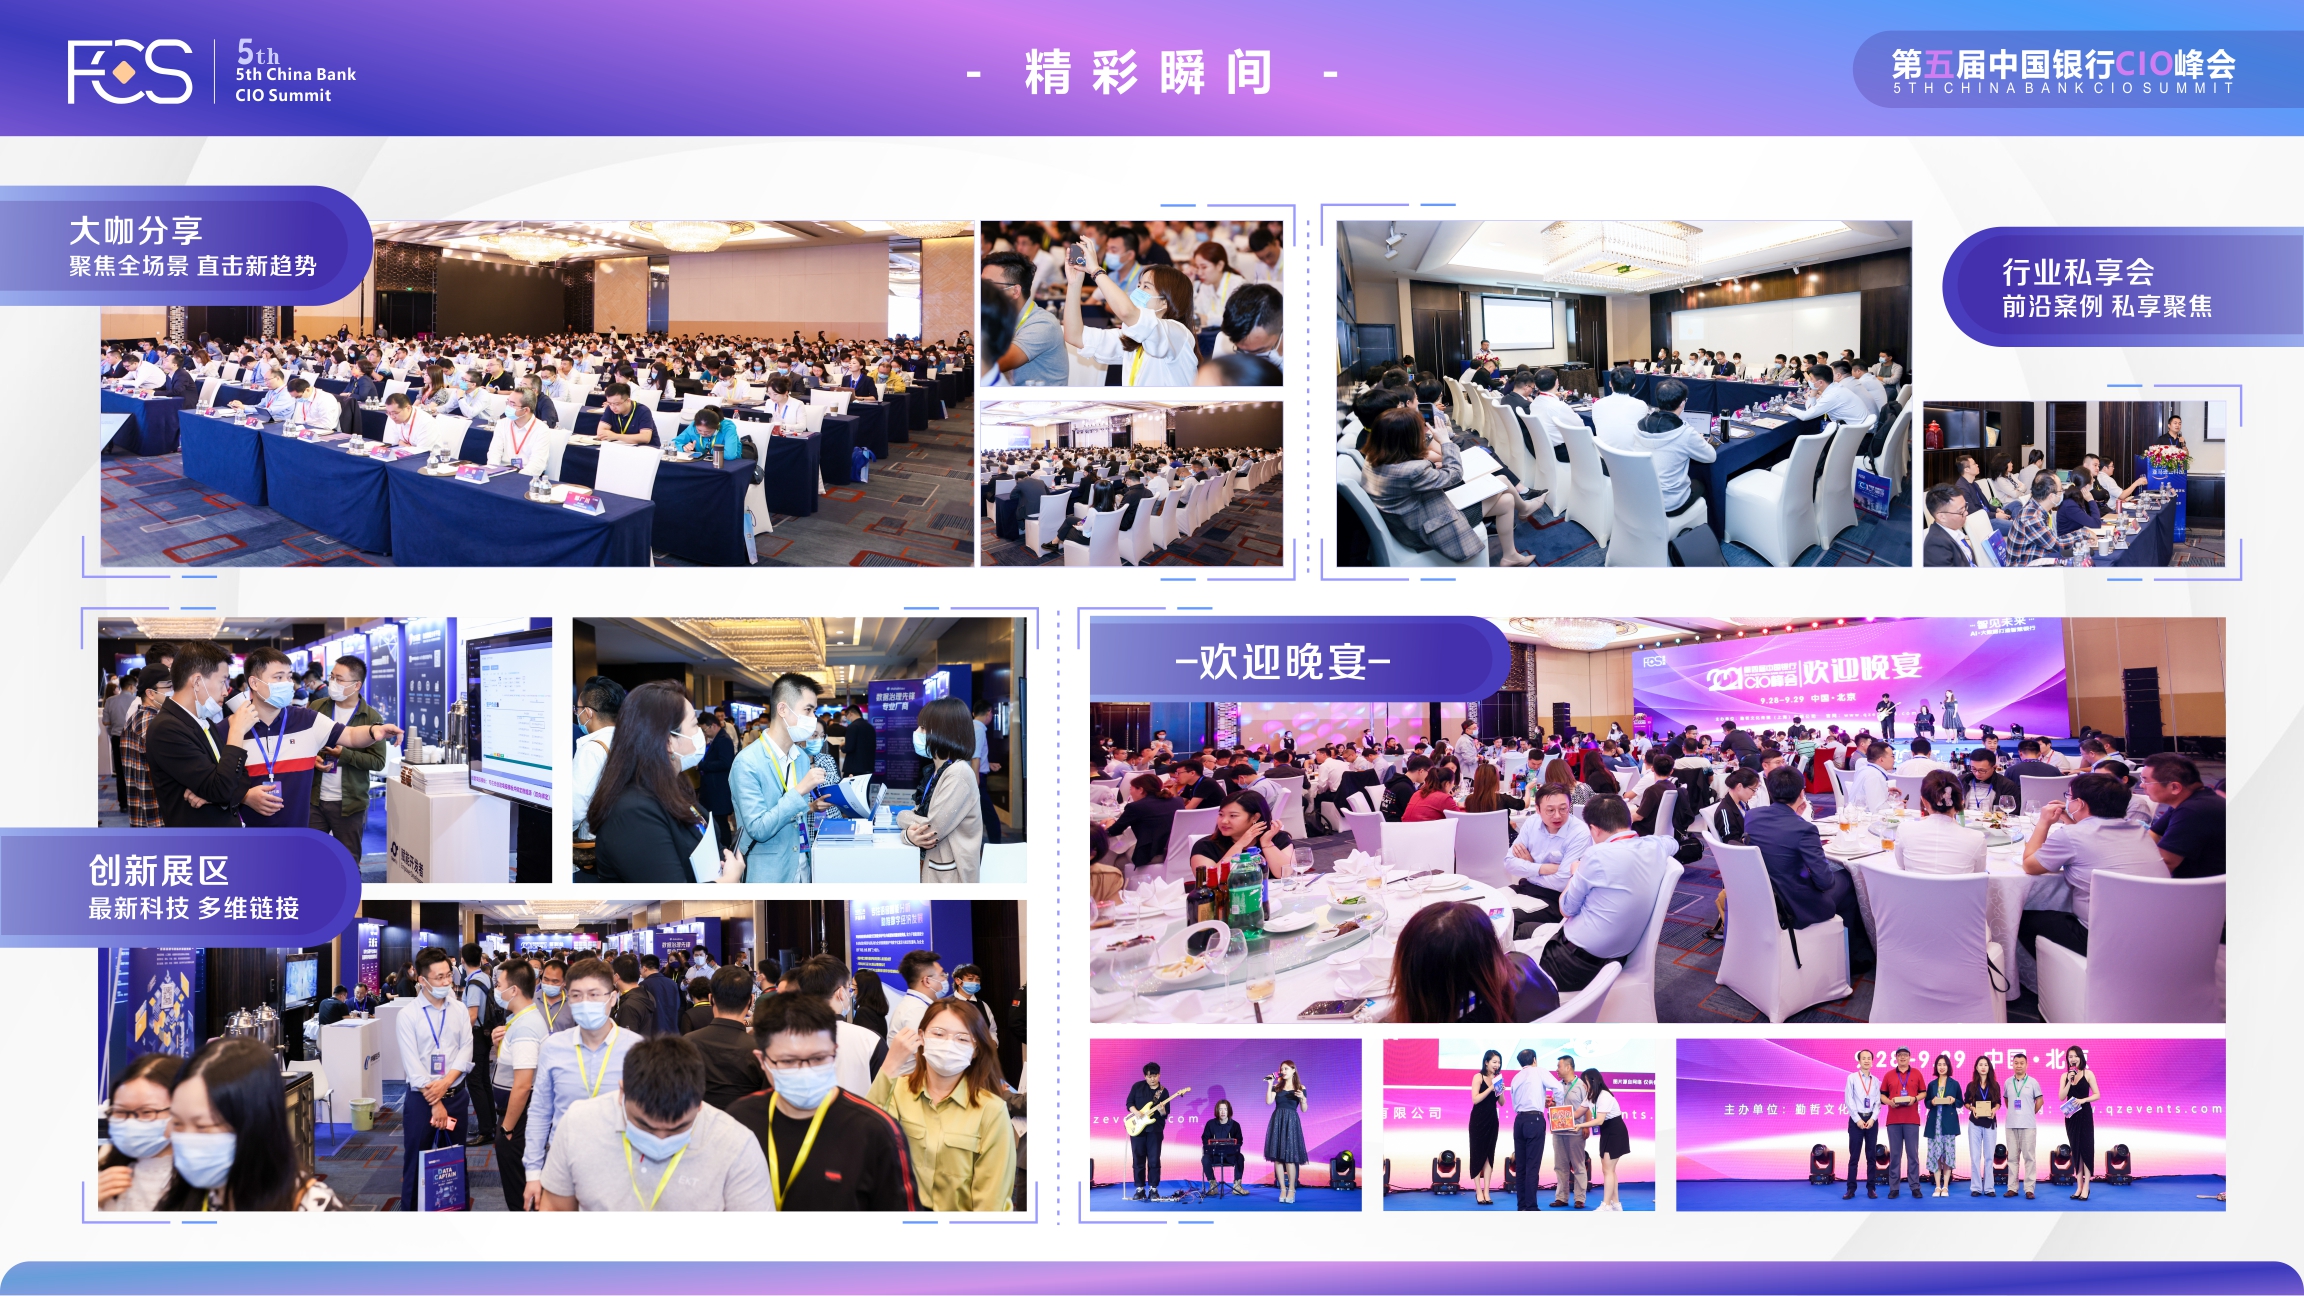 FCS 2022第五屆中國銀行CIO峰會